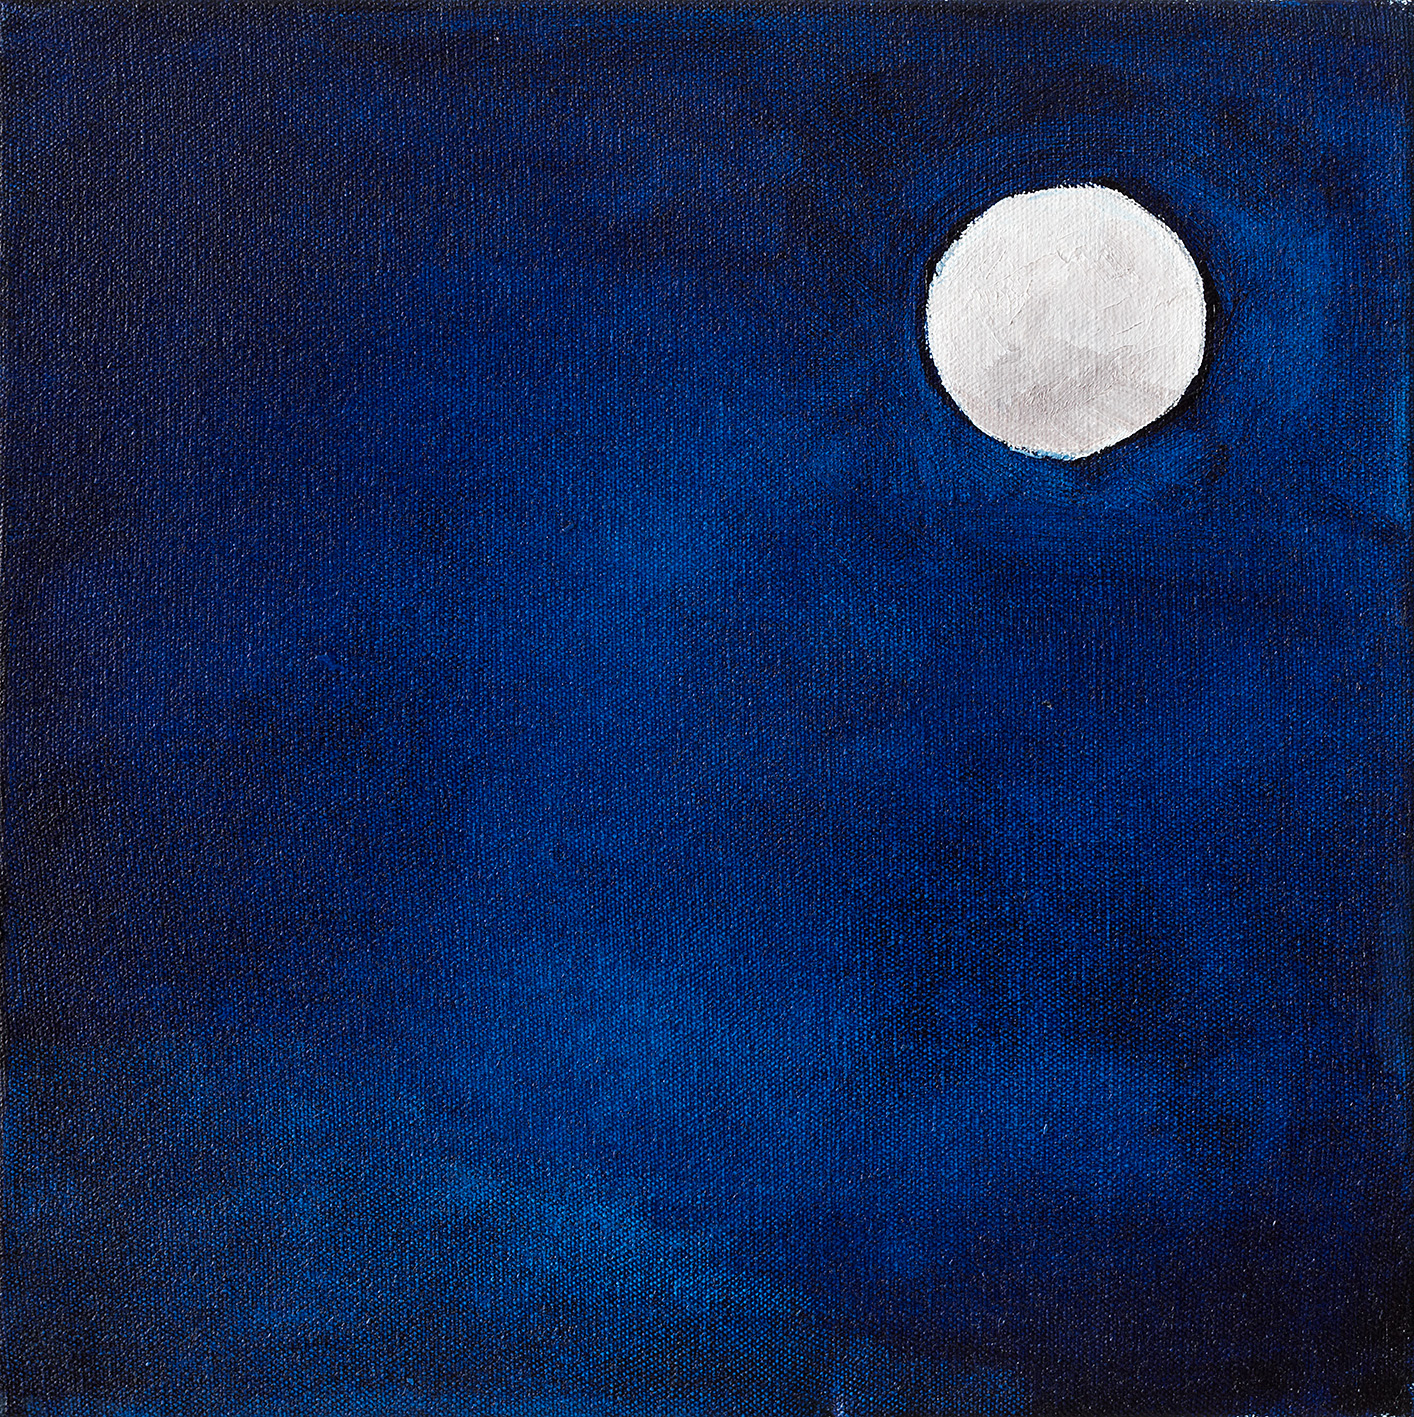 "Moon", 
2022,
Oil on canvas,
30x30 cm